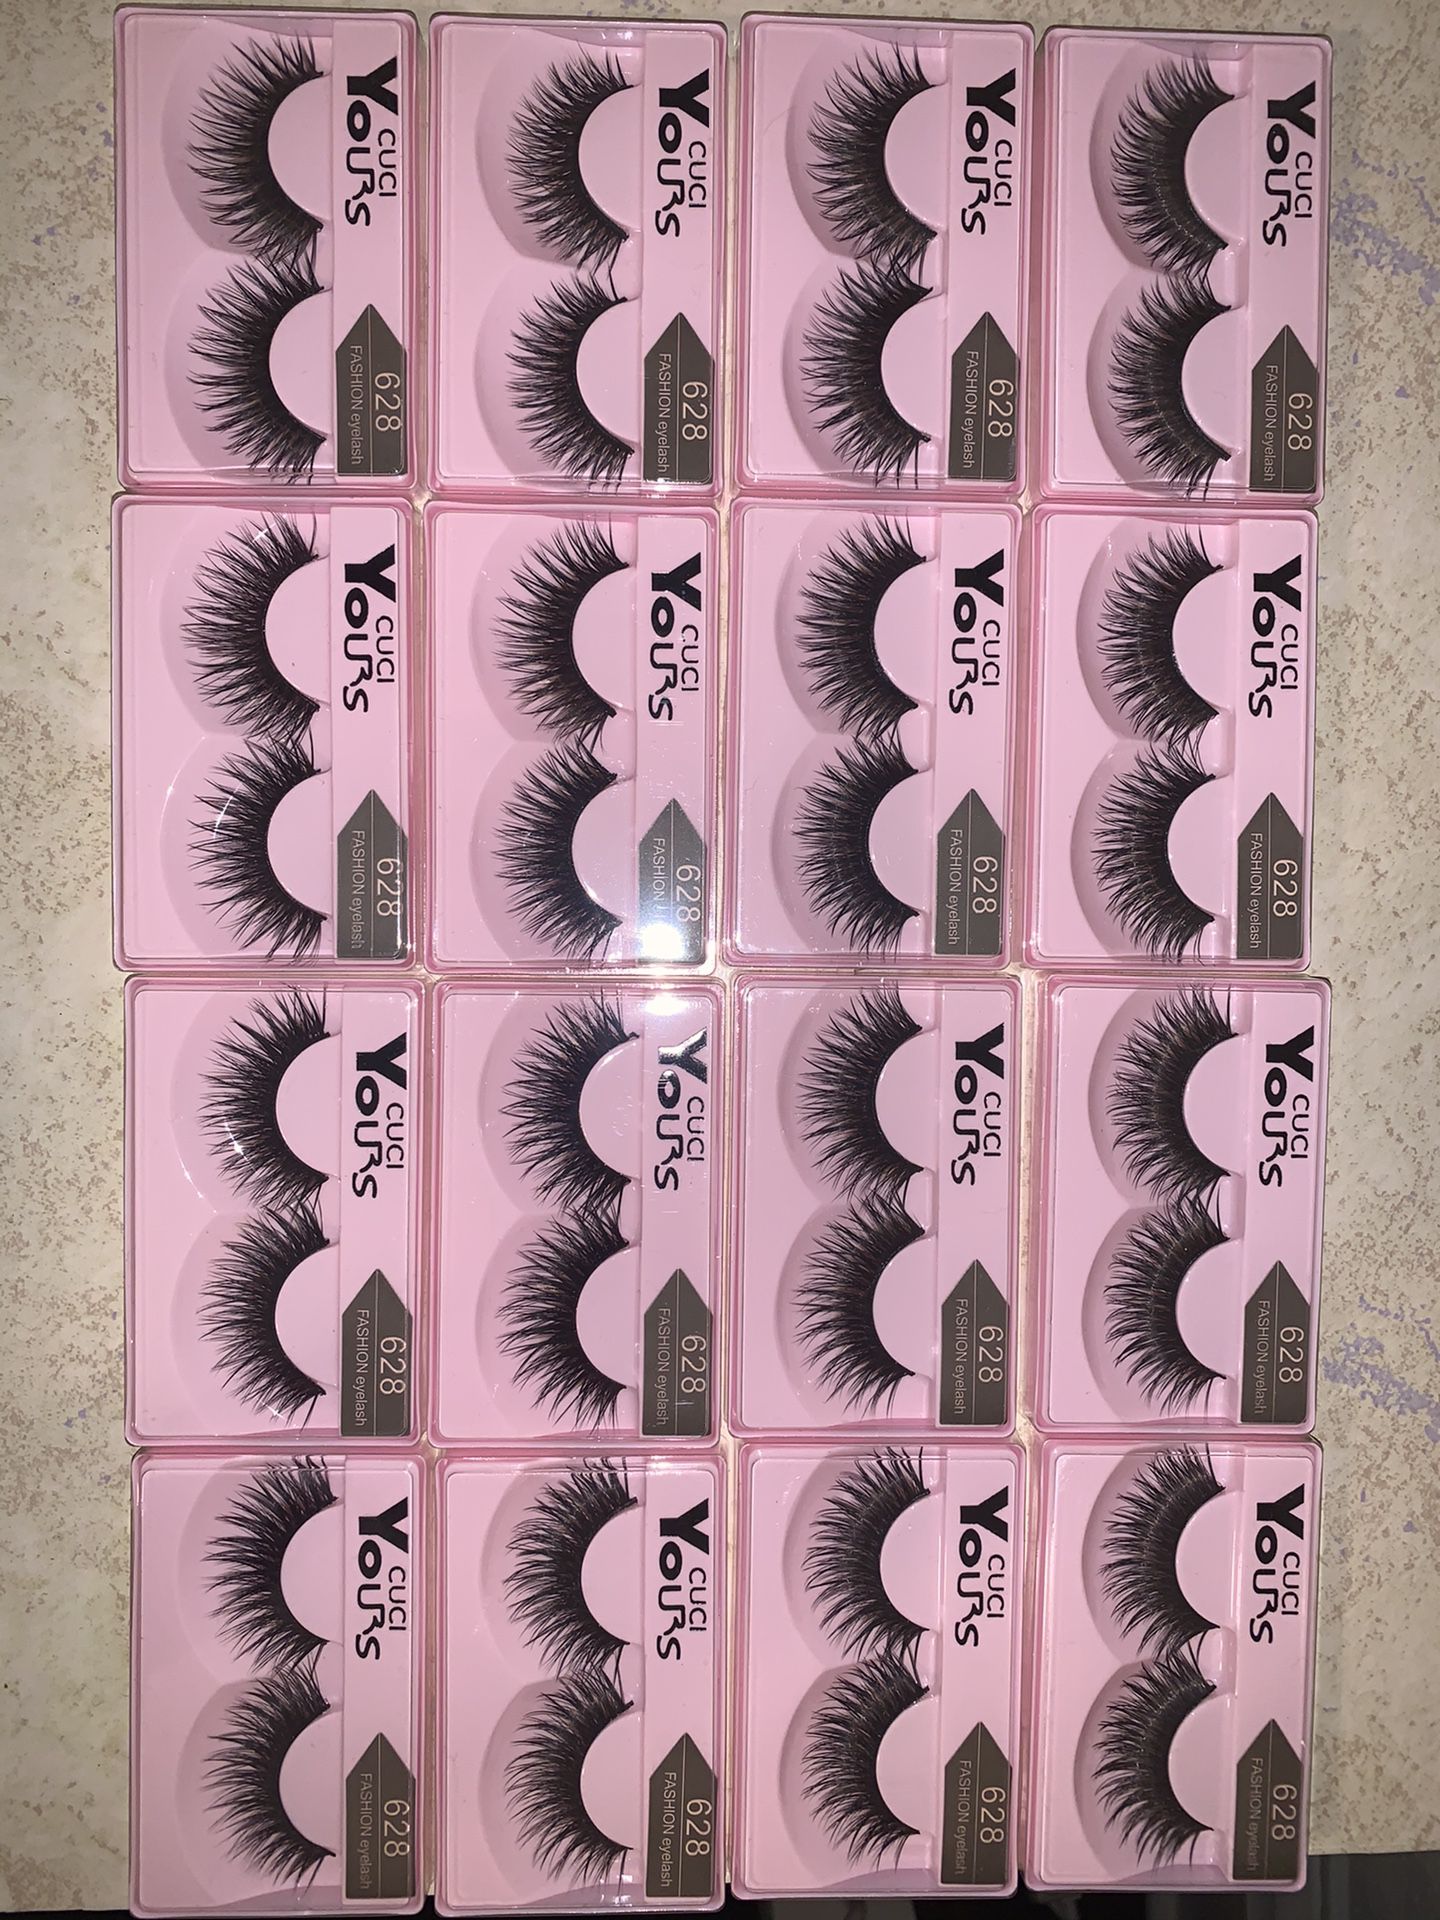 16 pairs of eyelashes